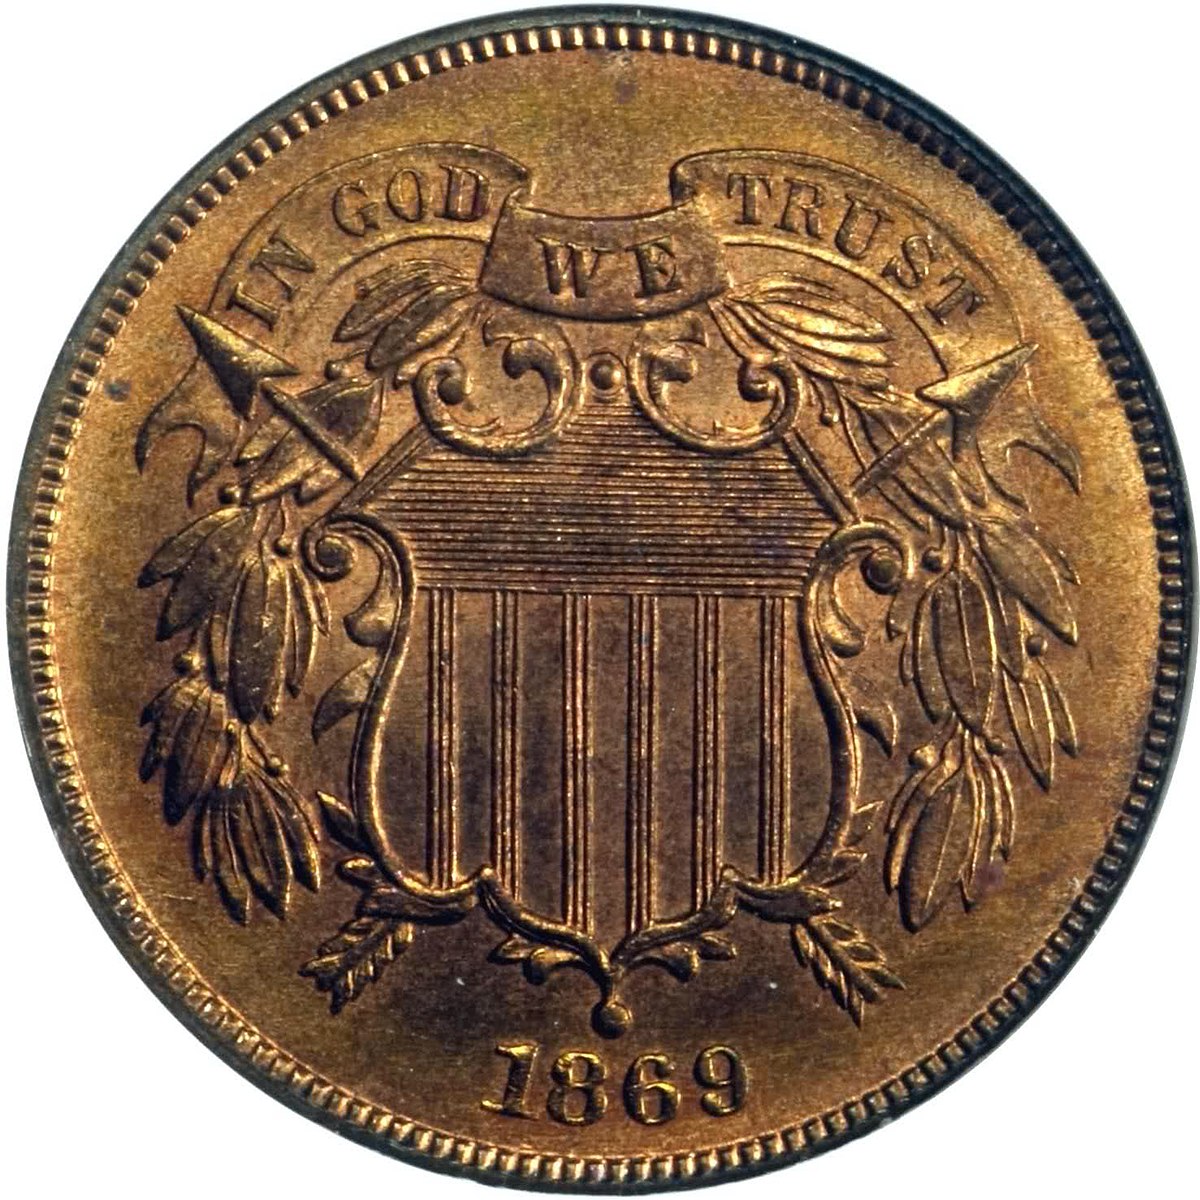 Đồng hai cent là đồng xu Mỹ đầu tiên được đúc với câu “Chúng ta tin vào Thượng Đế” (In God We Trust). (Ảnh: Tư liệu công cộng)